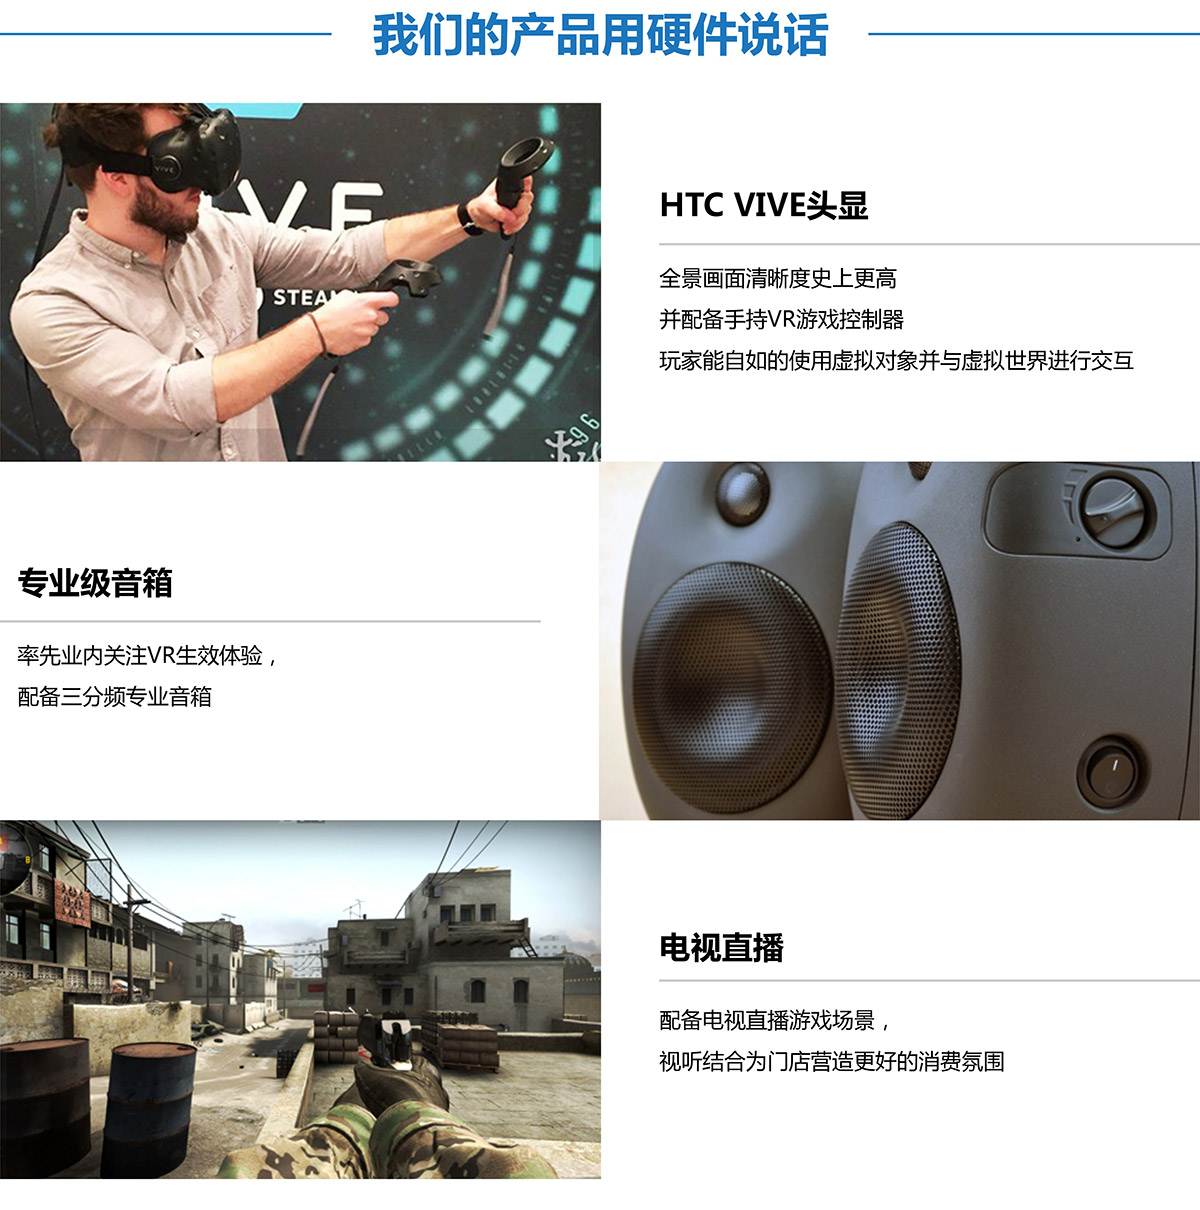 校园安全VR探索用硬件说话.jpg